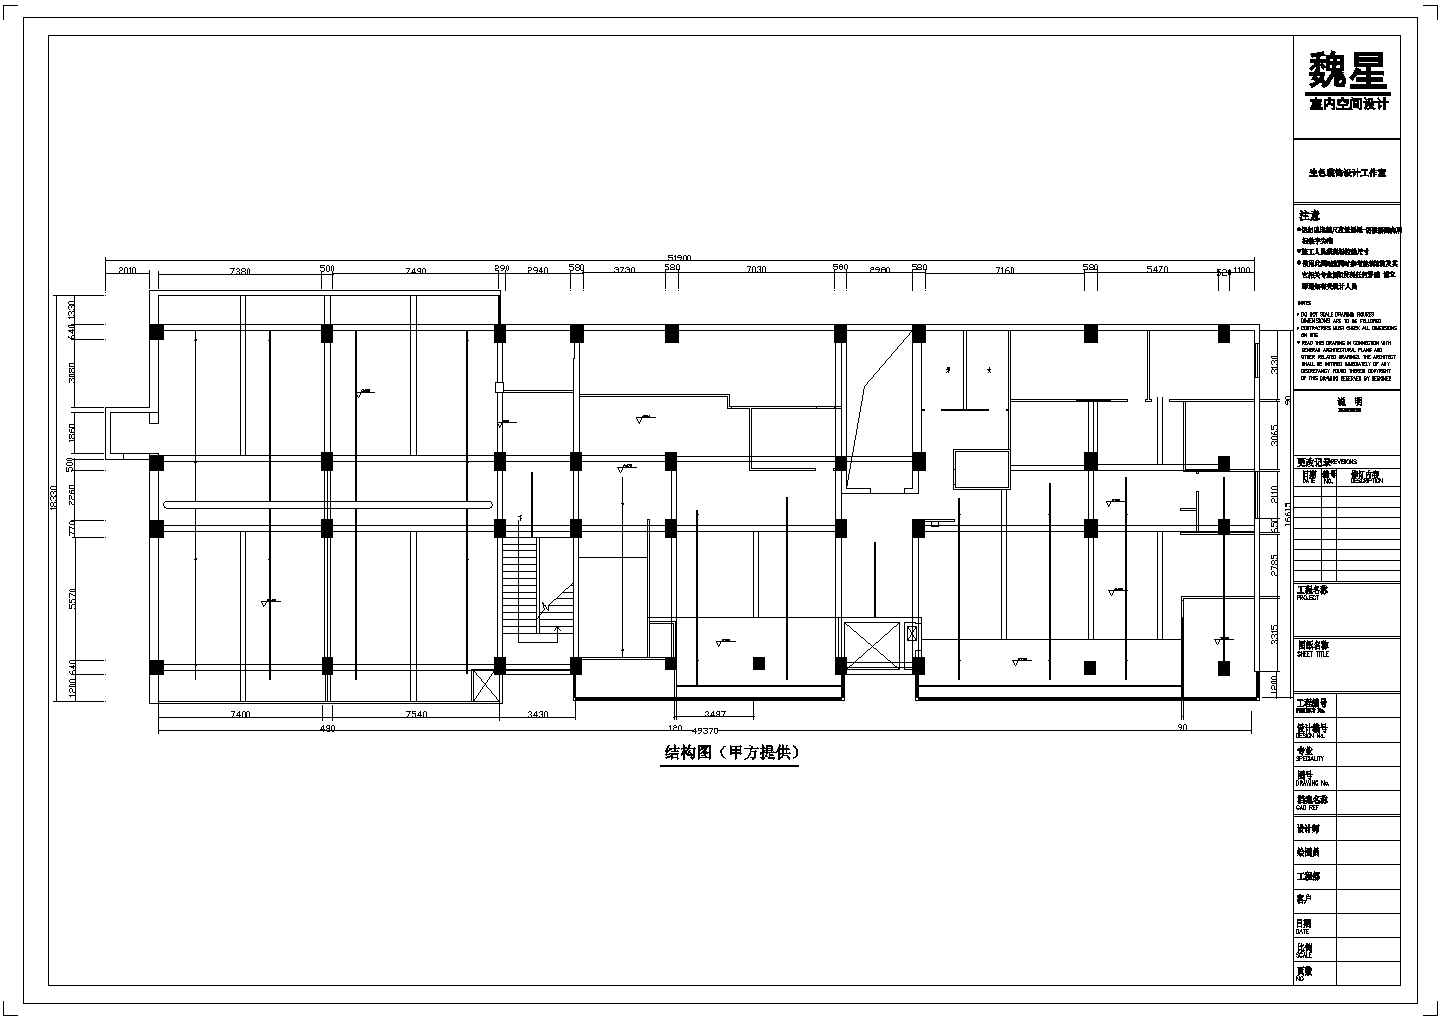 安徽省天长市某街道新开业经七路茶楼设计CAD图纸